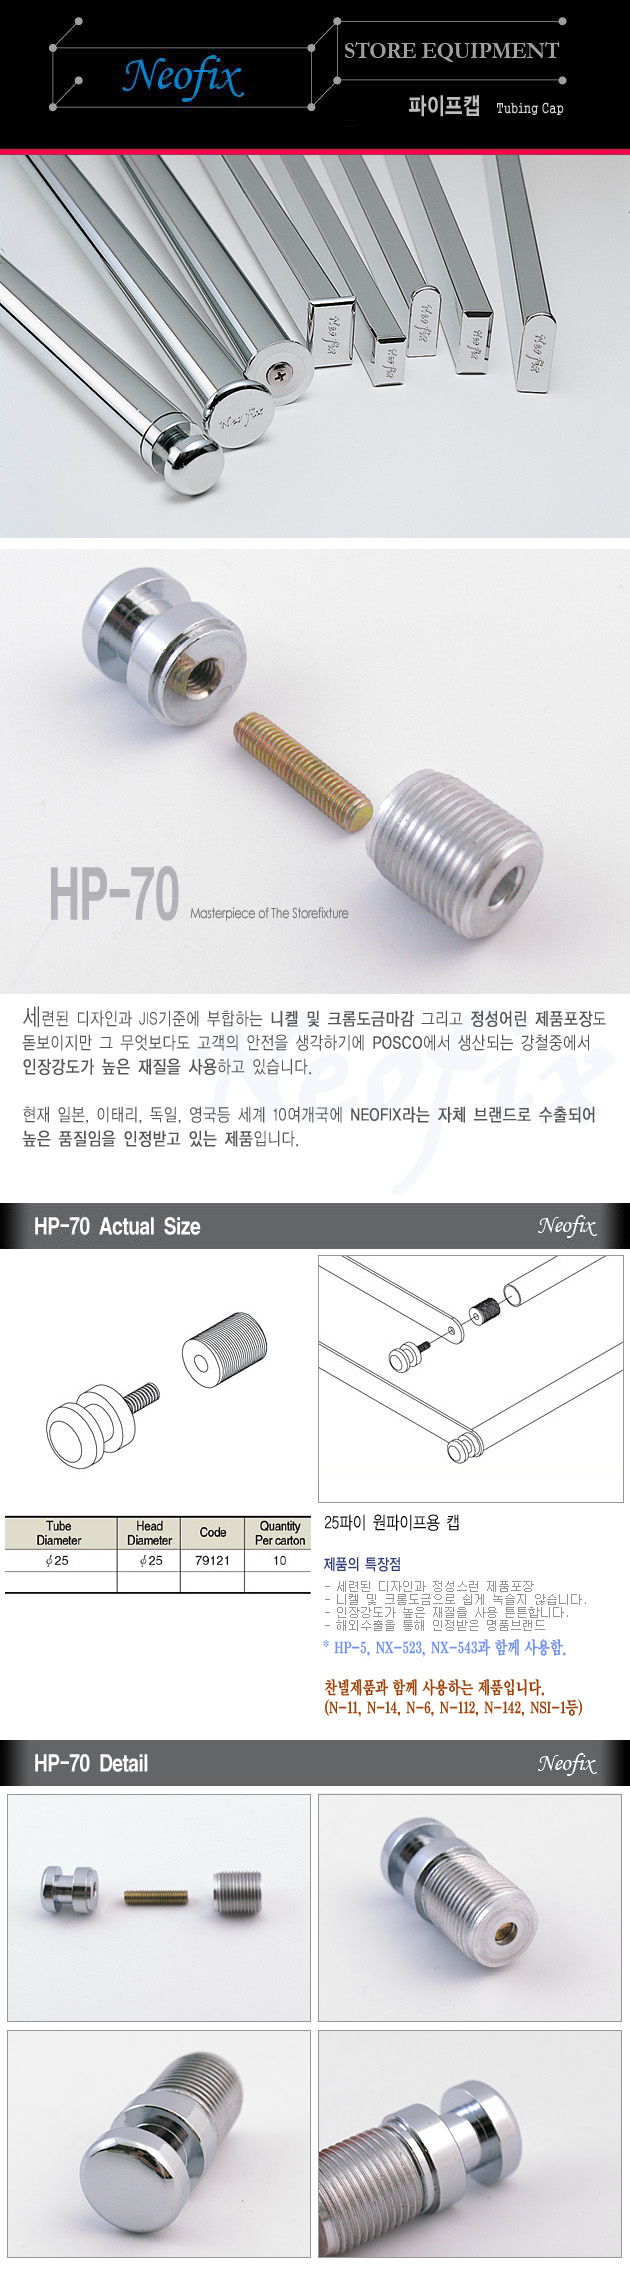 HP-70